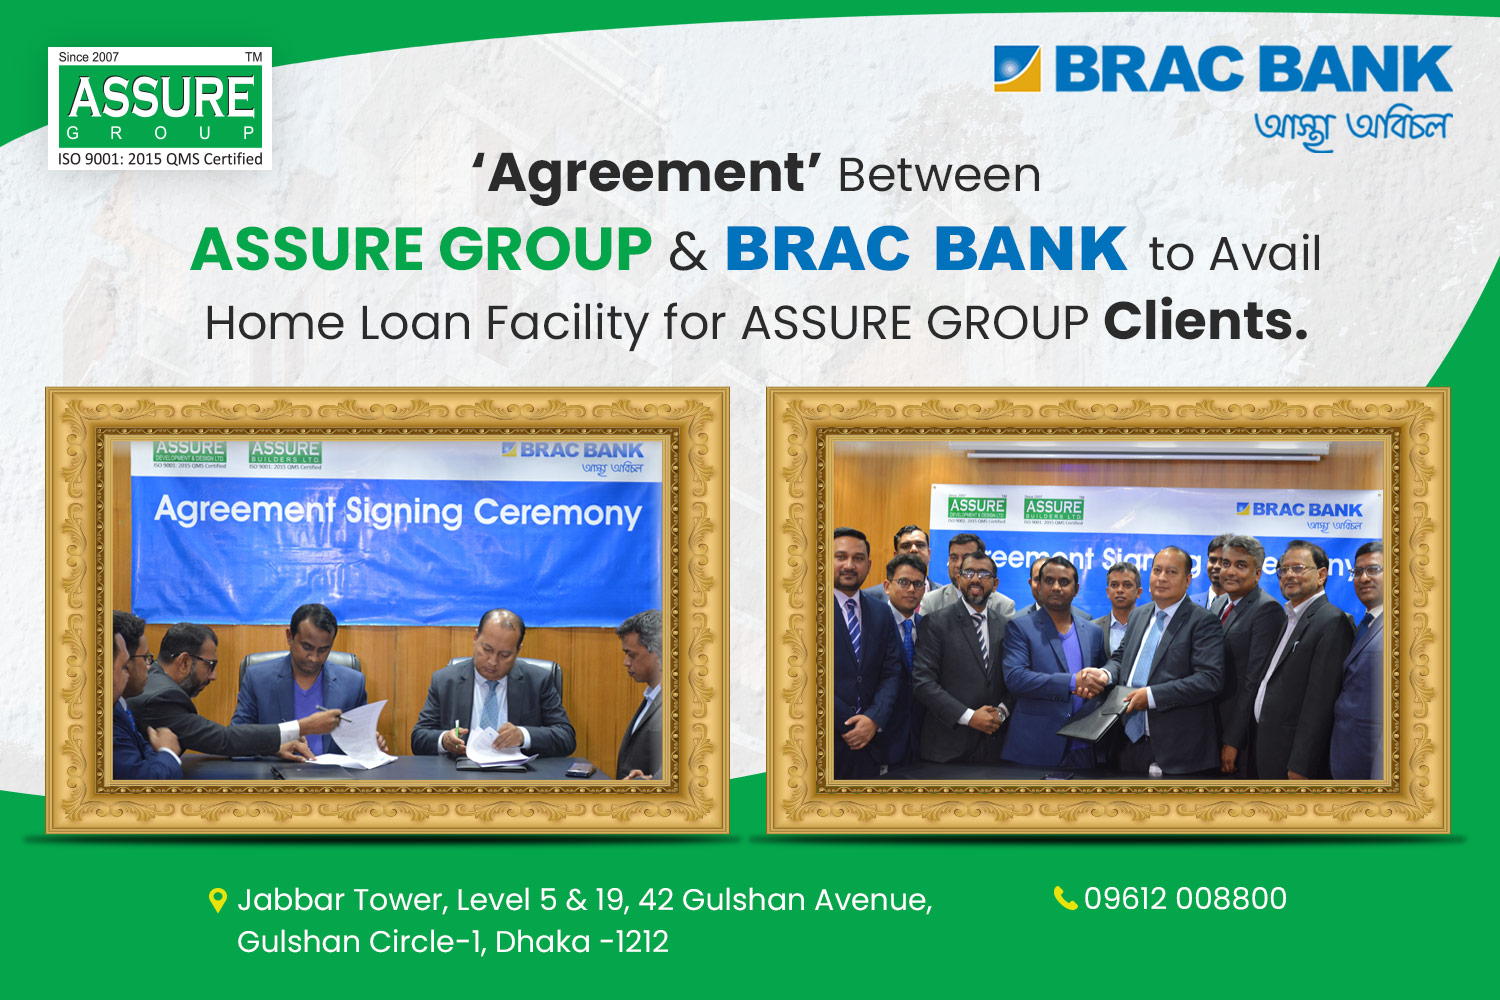 MoU Agreement between BRAC BANK & ASSURE GROUP